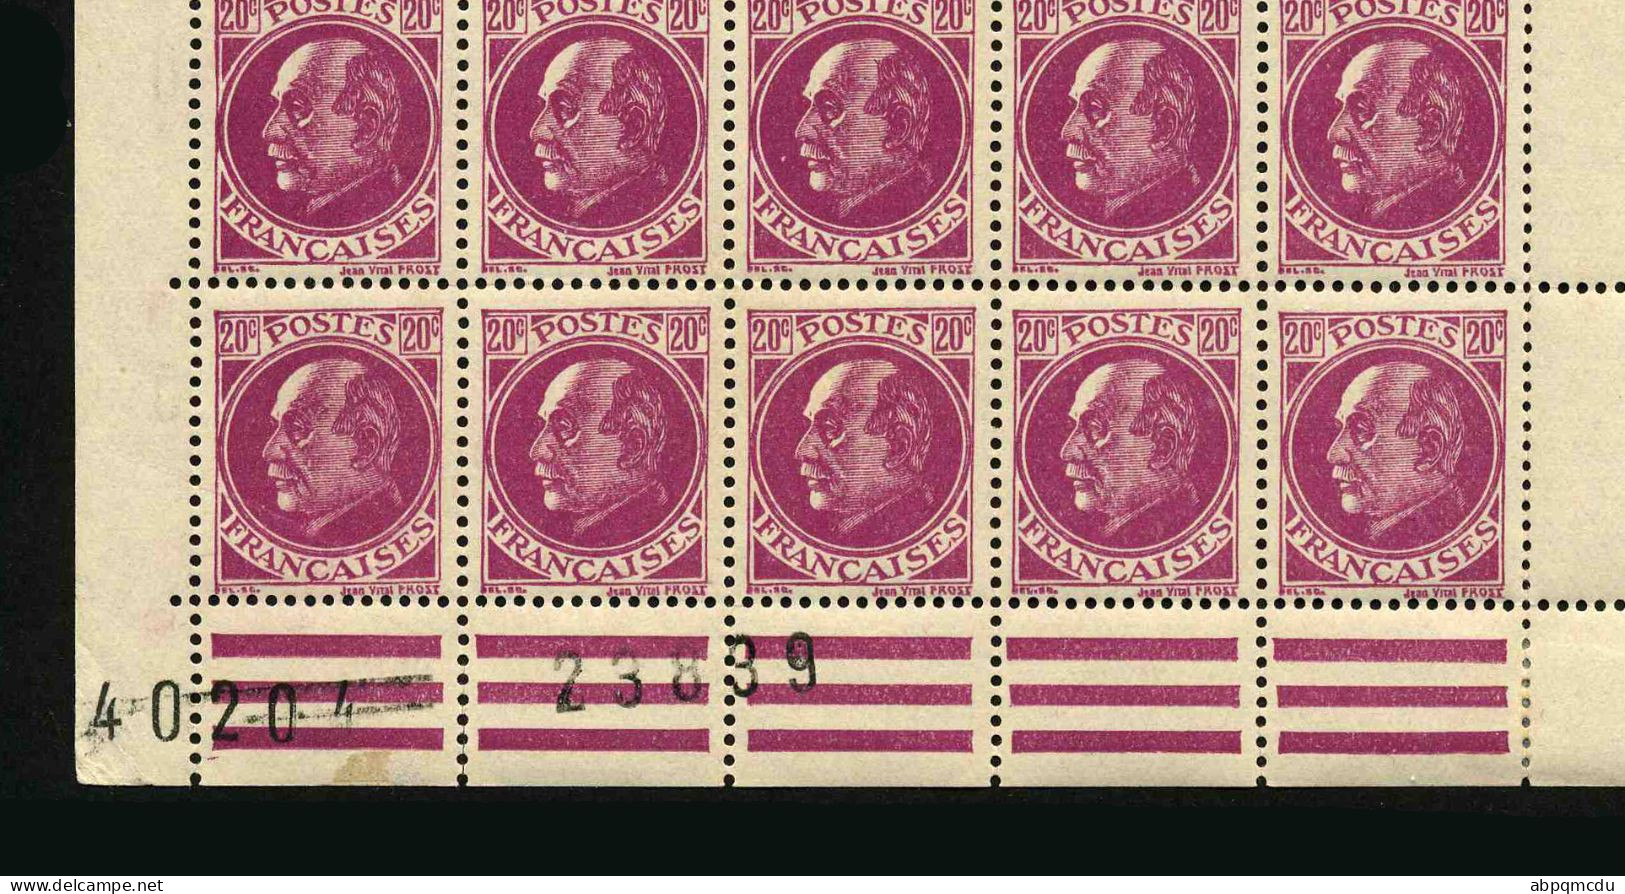 FRANCE - YT 505 - BLOC DE 40 TIMBRES PROVENANT D'UNE FEUILLE DE REMPLACEMENT - Unused Stamps